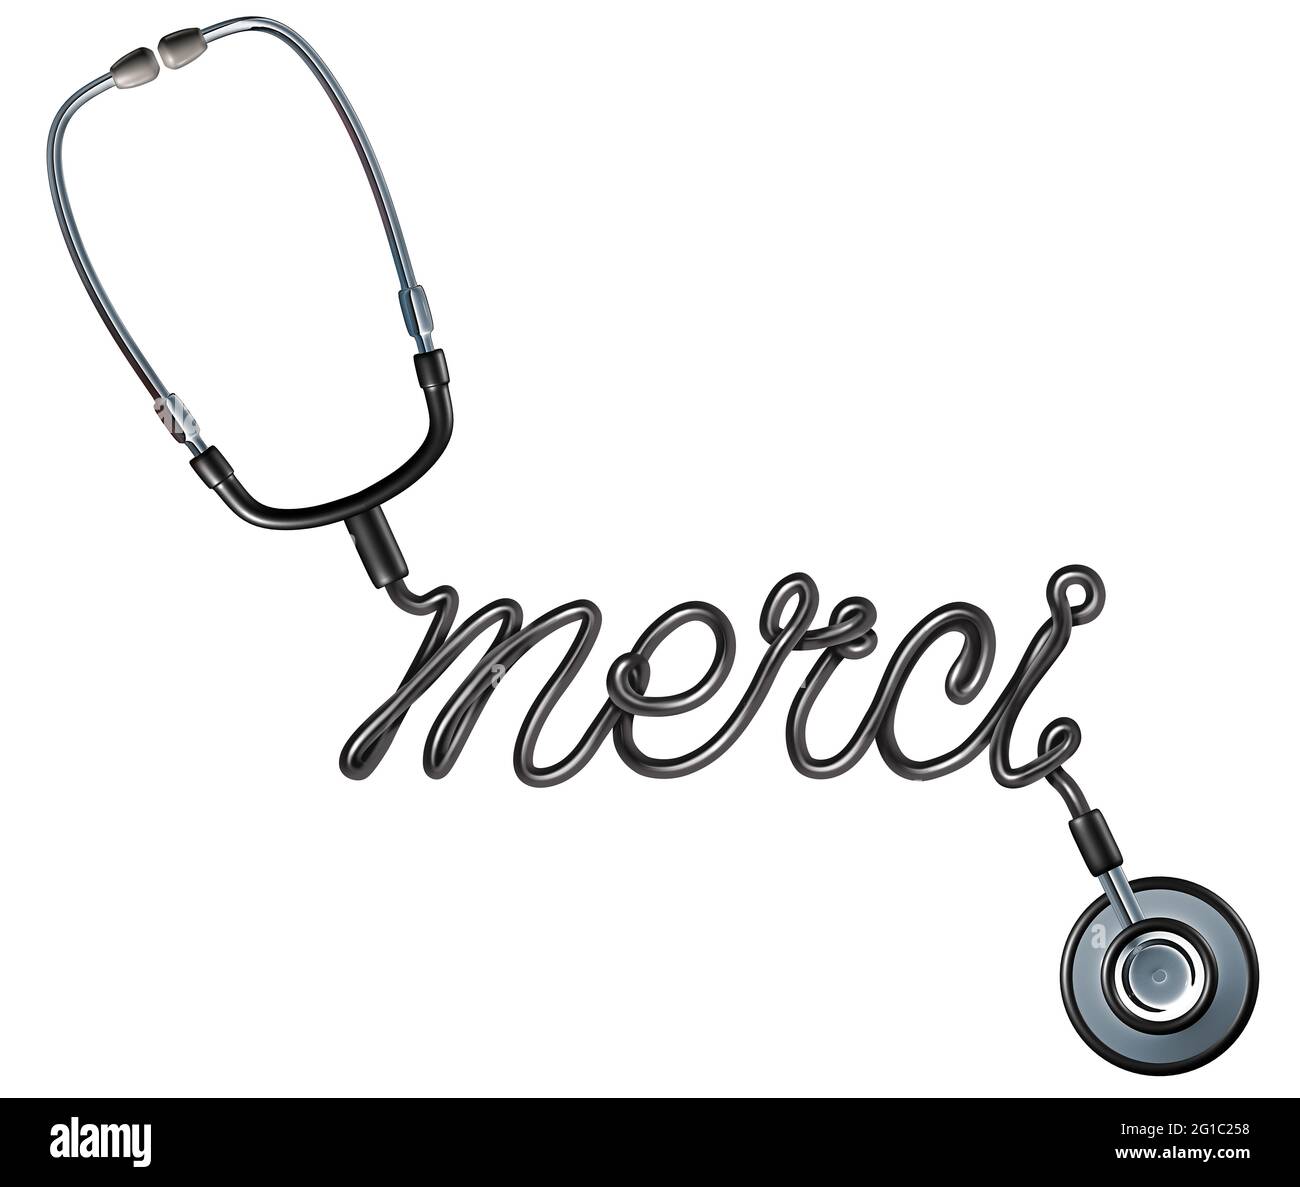 Sanità grazie come una parola francese con uno stetoscopio medico modellato come un testo di ringraziamento come un simbolo per l'apprezzamento degli operatori sanitari. Foto Stock